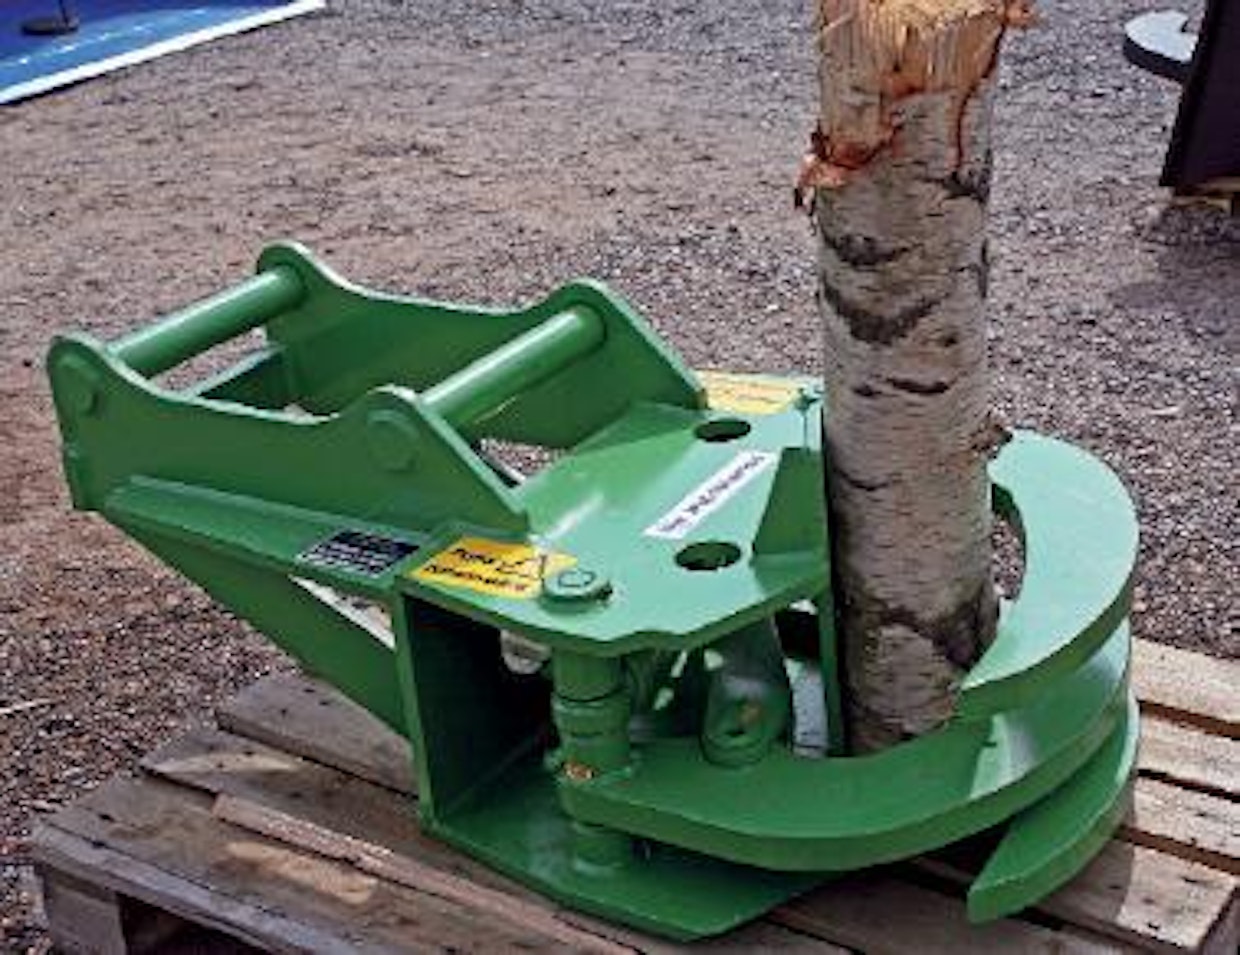 PH-Works Oy:n kehittämä EPK-65-energiakoura puristaa kourillaan maksimissaan 20-senttisen puun poikki katkaisuterää vasten. Koura avautuu 65 cm, joten joukkokäsittelystäkin voidaan puhua.